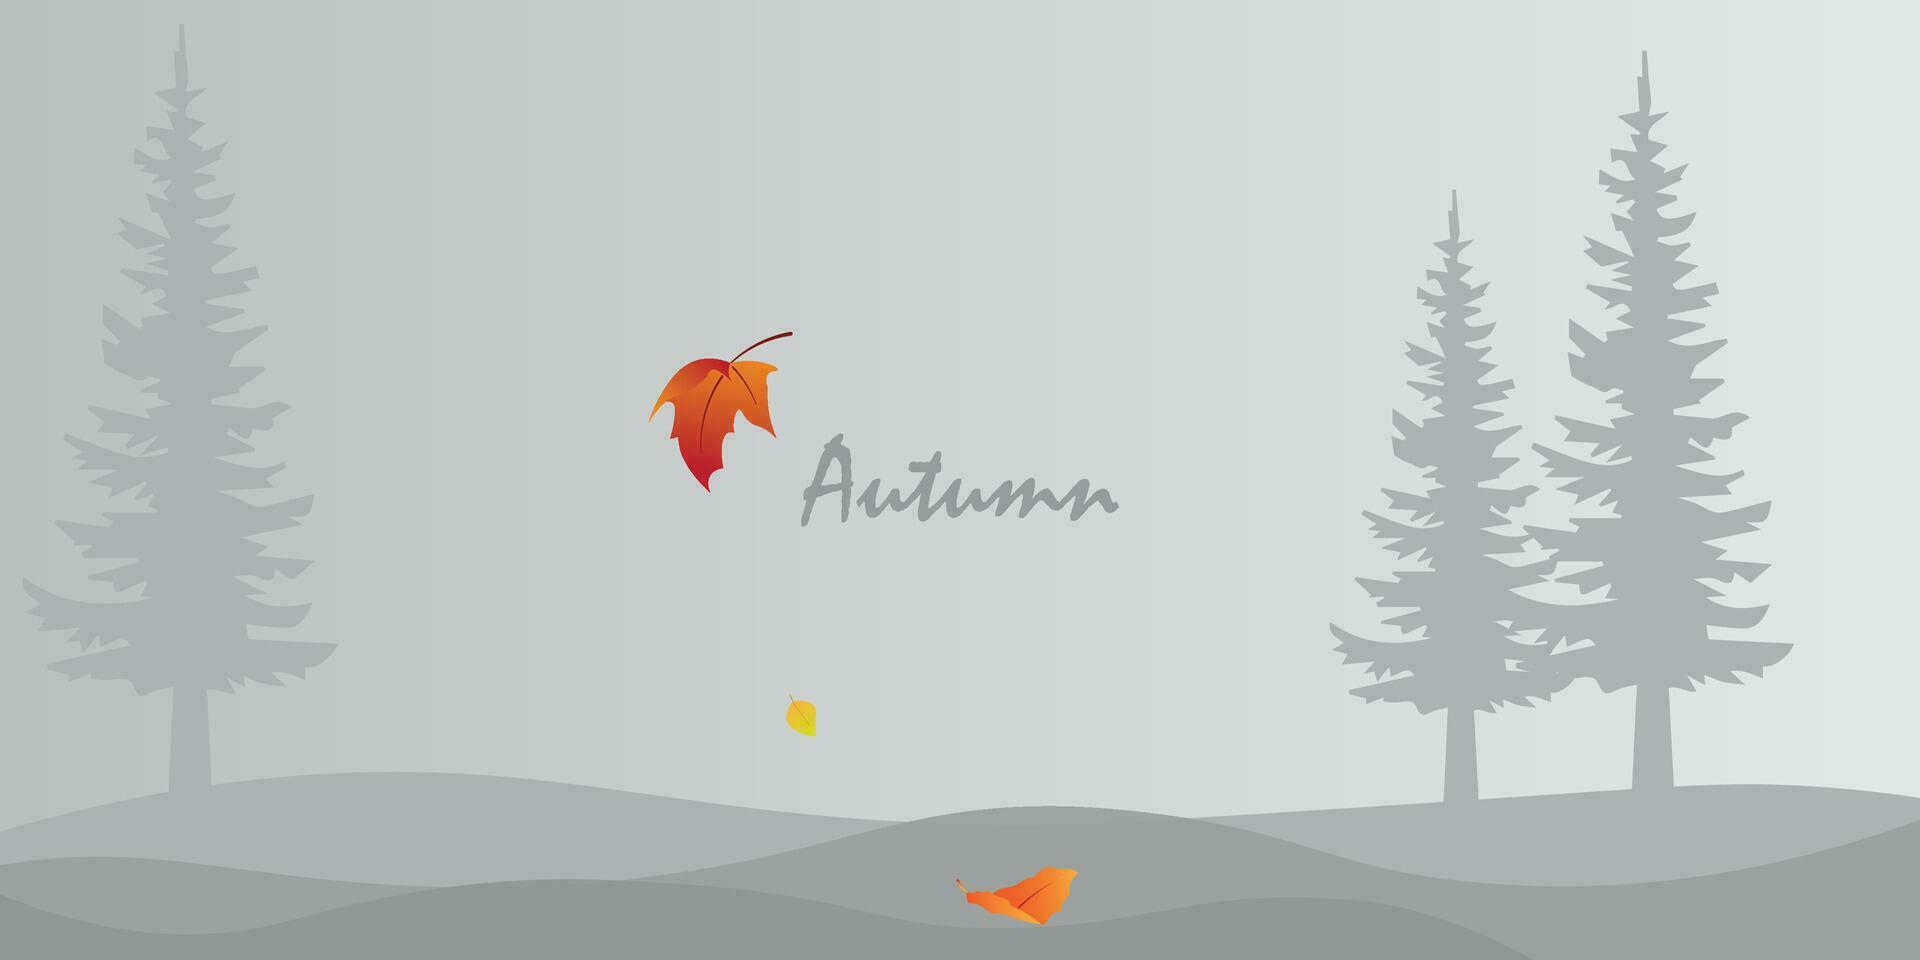 antecedentes diseño con minimalista colores con un otoño tema. vector